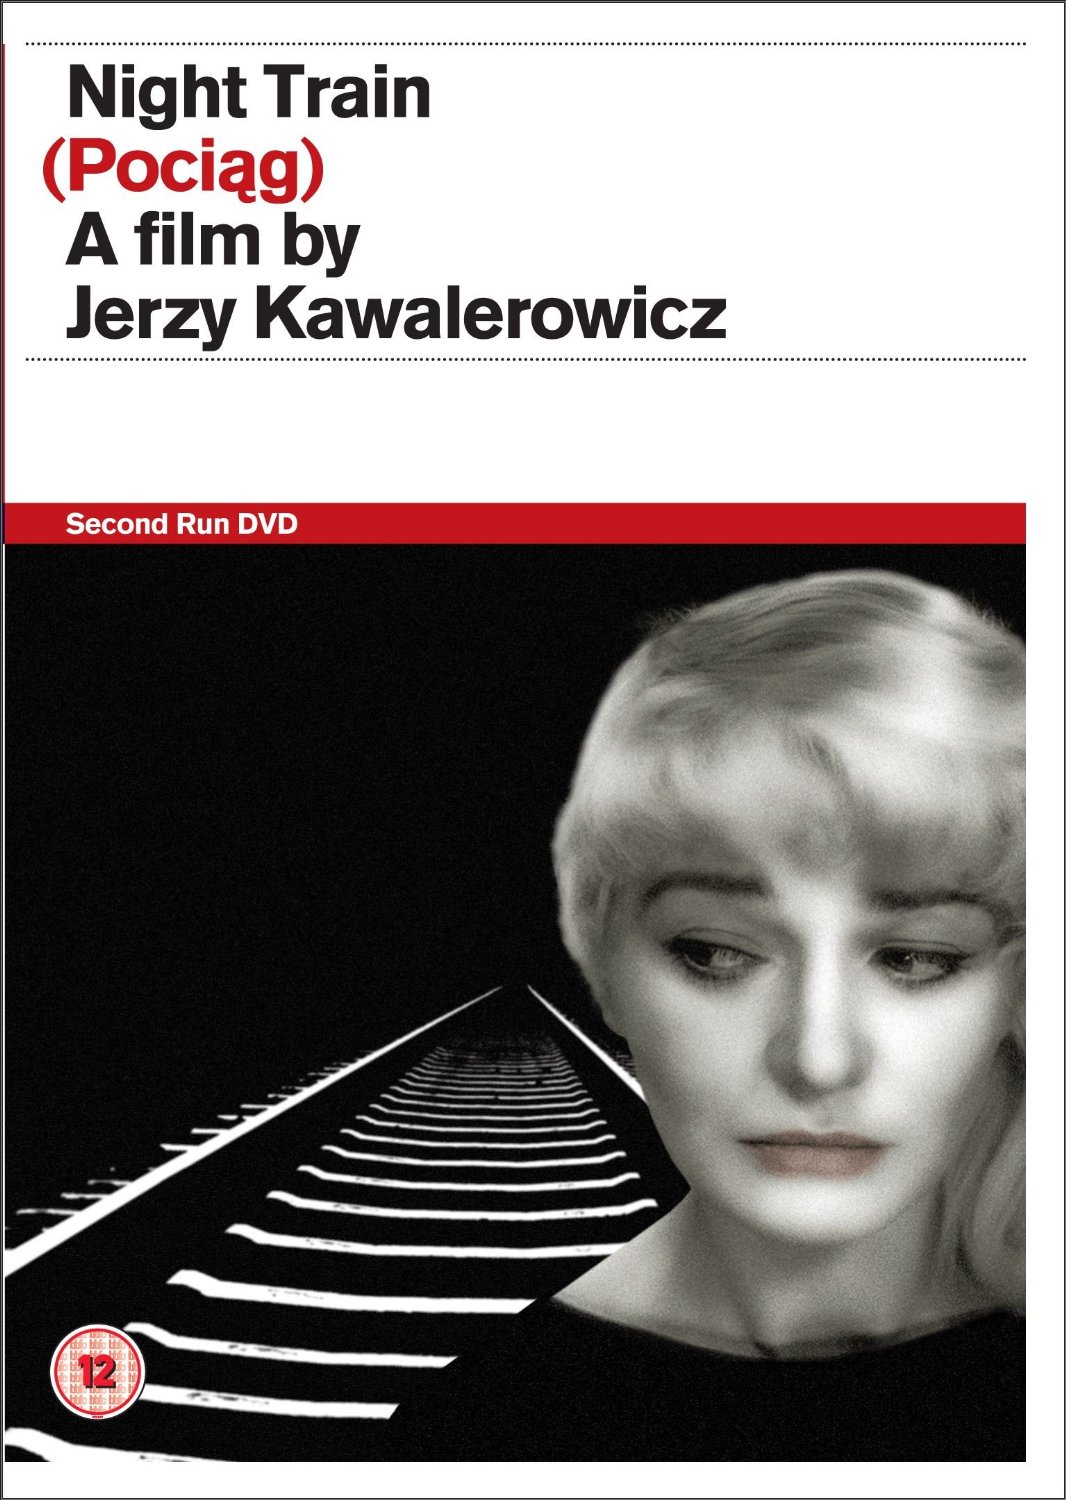 夜行列車(波蘭1959年耶爾齊·卡瓦萊羅維奇執導電影)